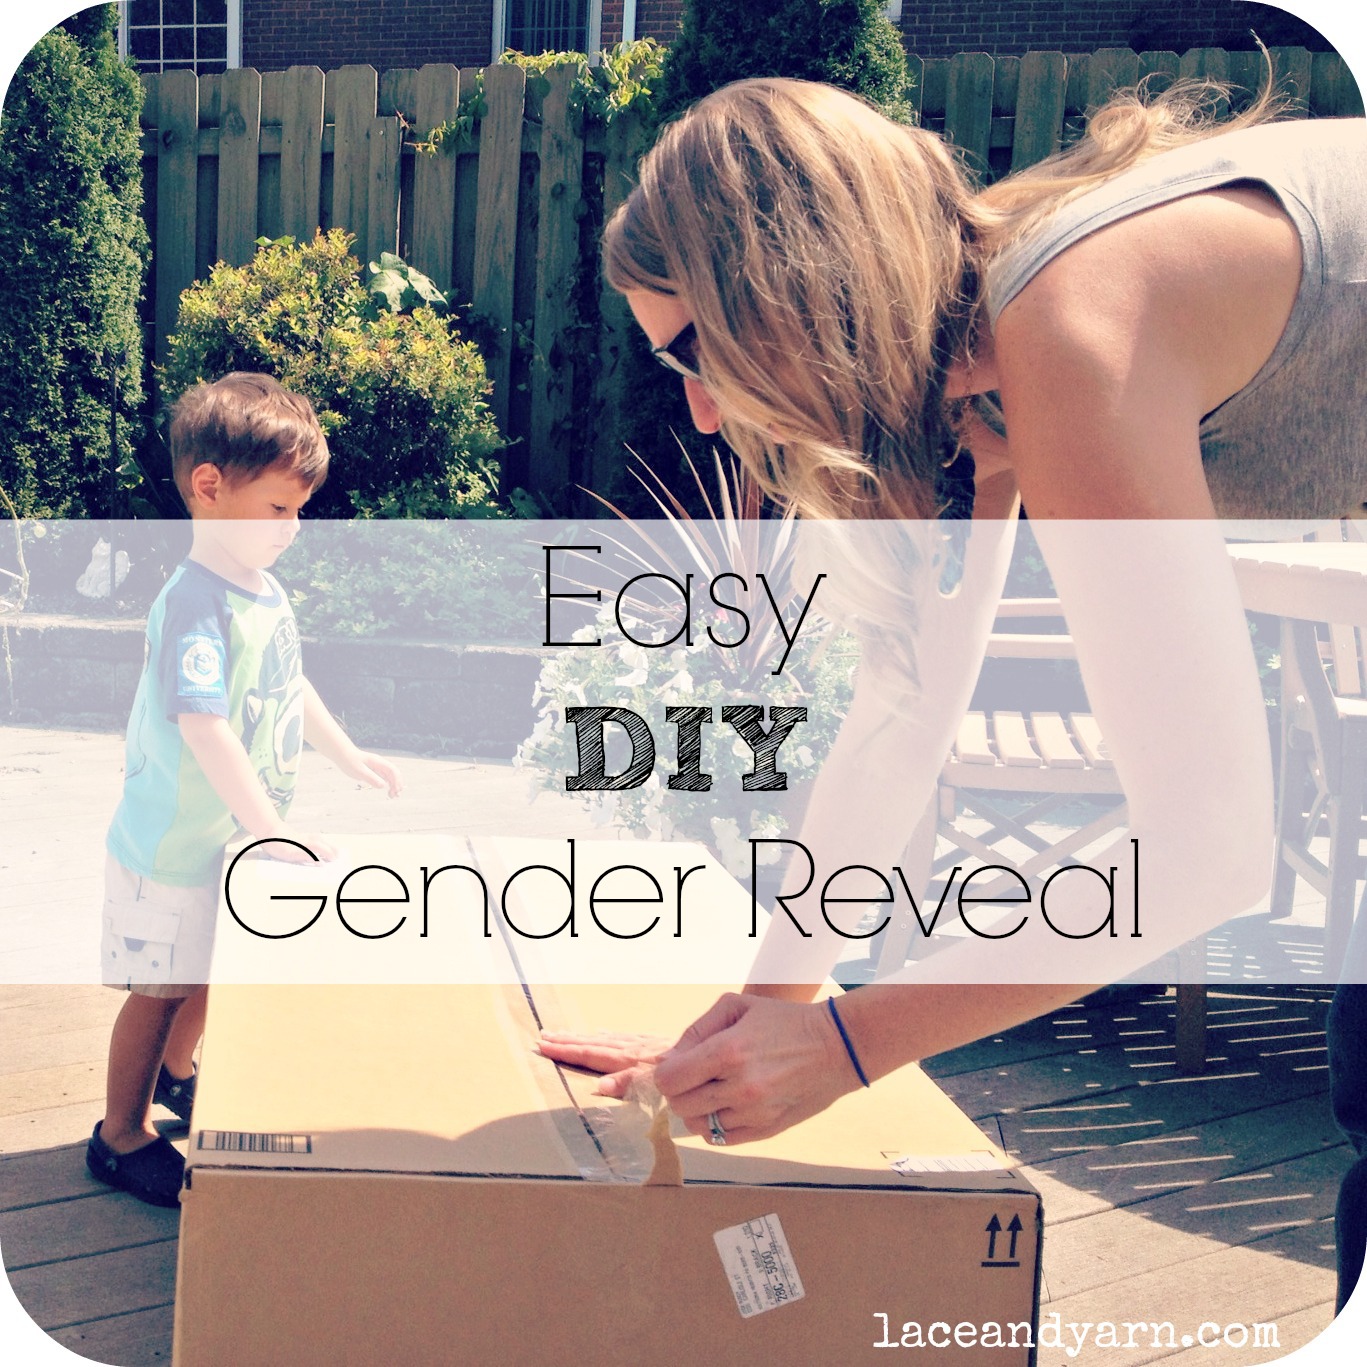 Easy DIY Gender Reveal by laceandyarn.com